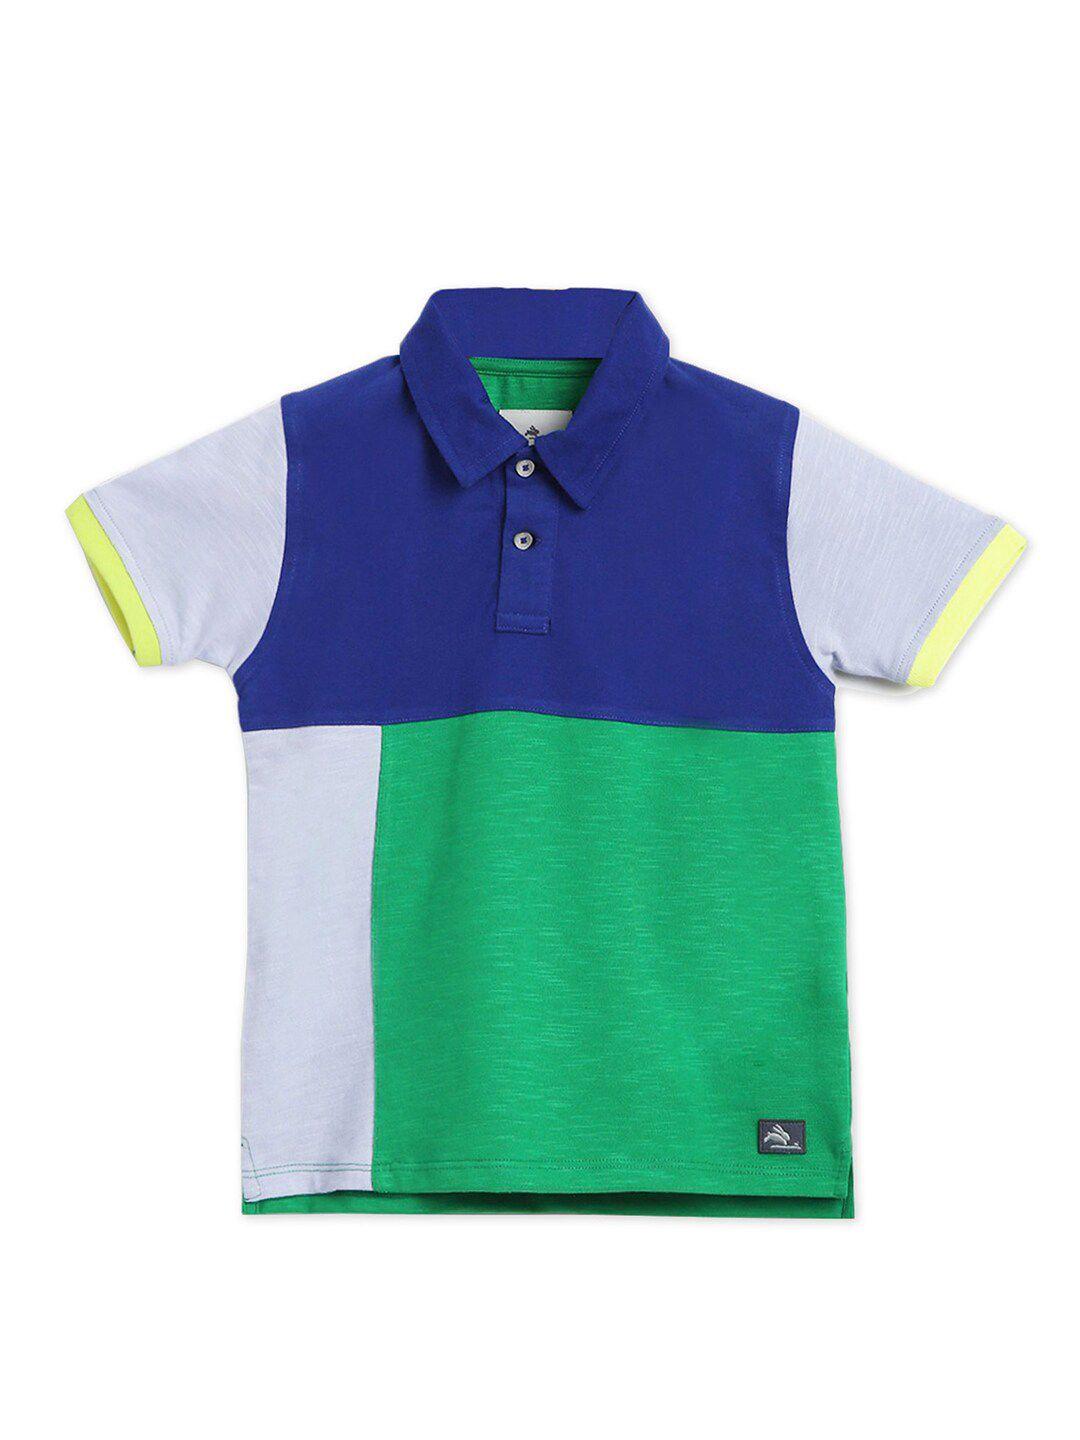 cherry-crumble-boys-blue-&-green-colourblocked-polo-collar-t-shirt